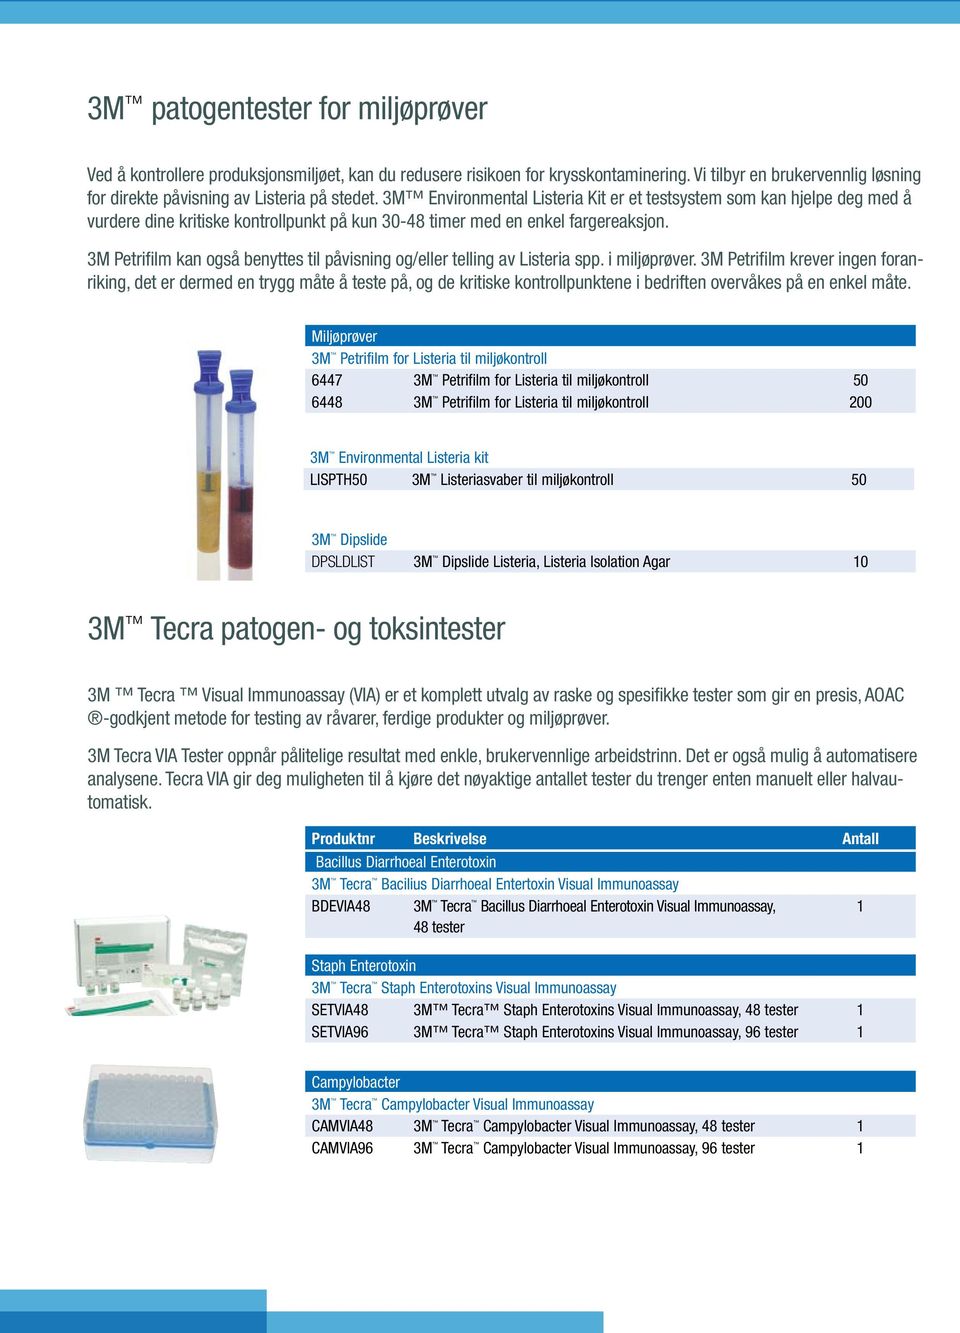 3M Petrifilm kan også benyttes til påvisning og/eller telling av Listeria spp. i miljøprøver.